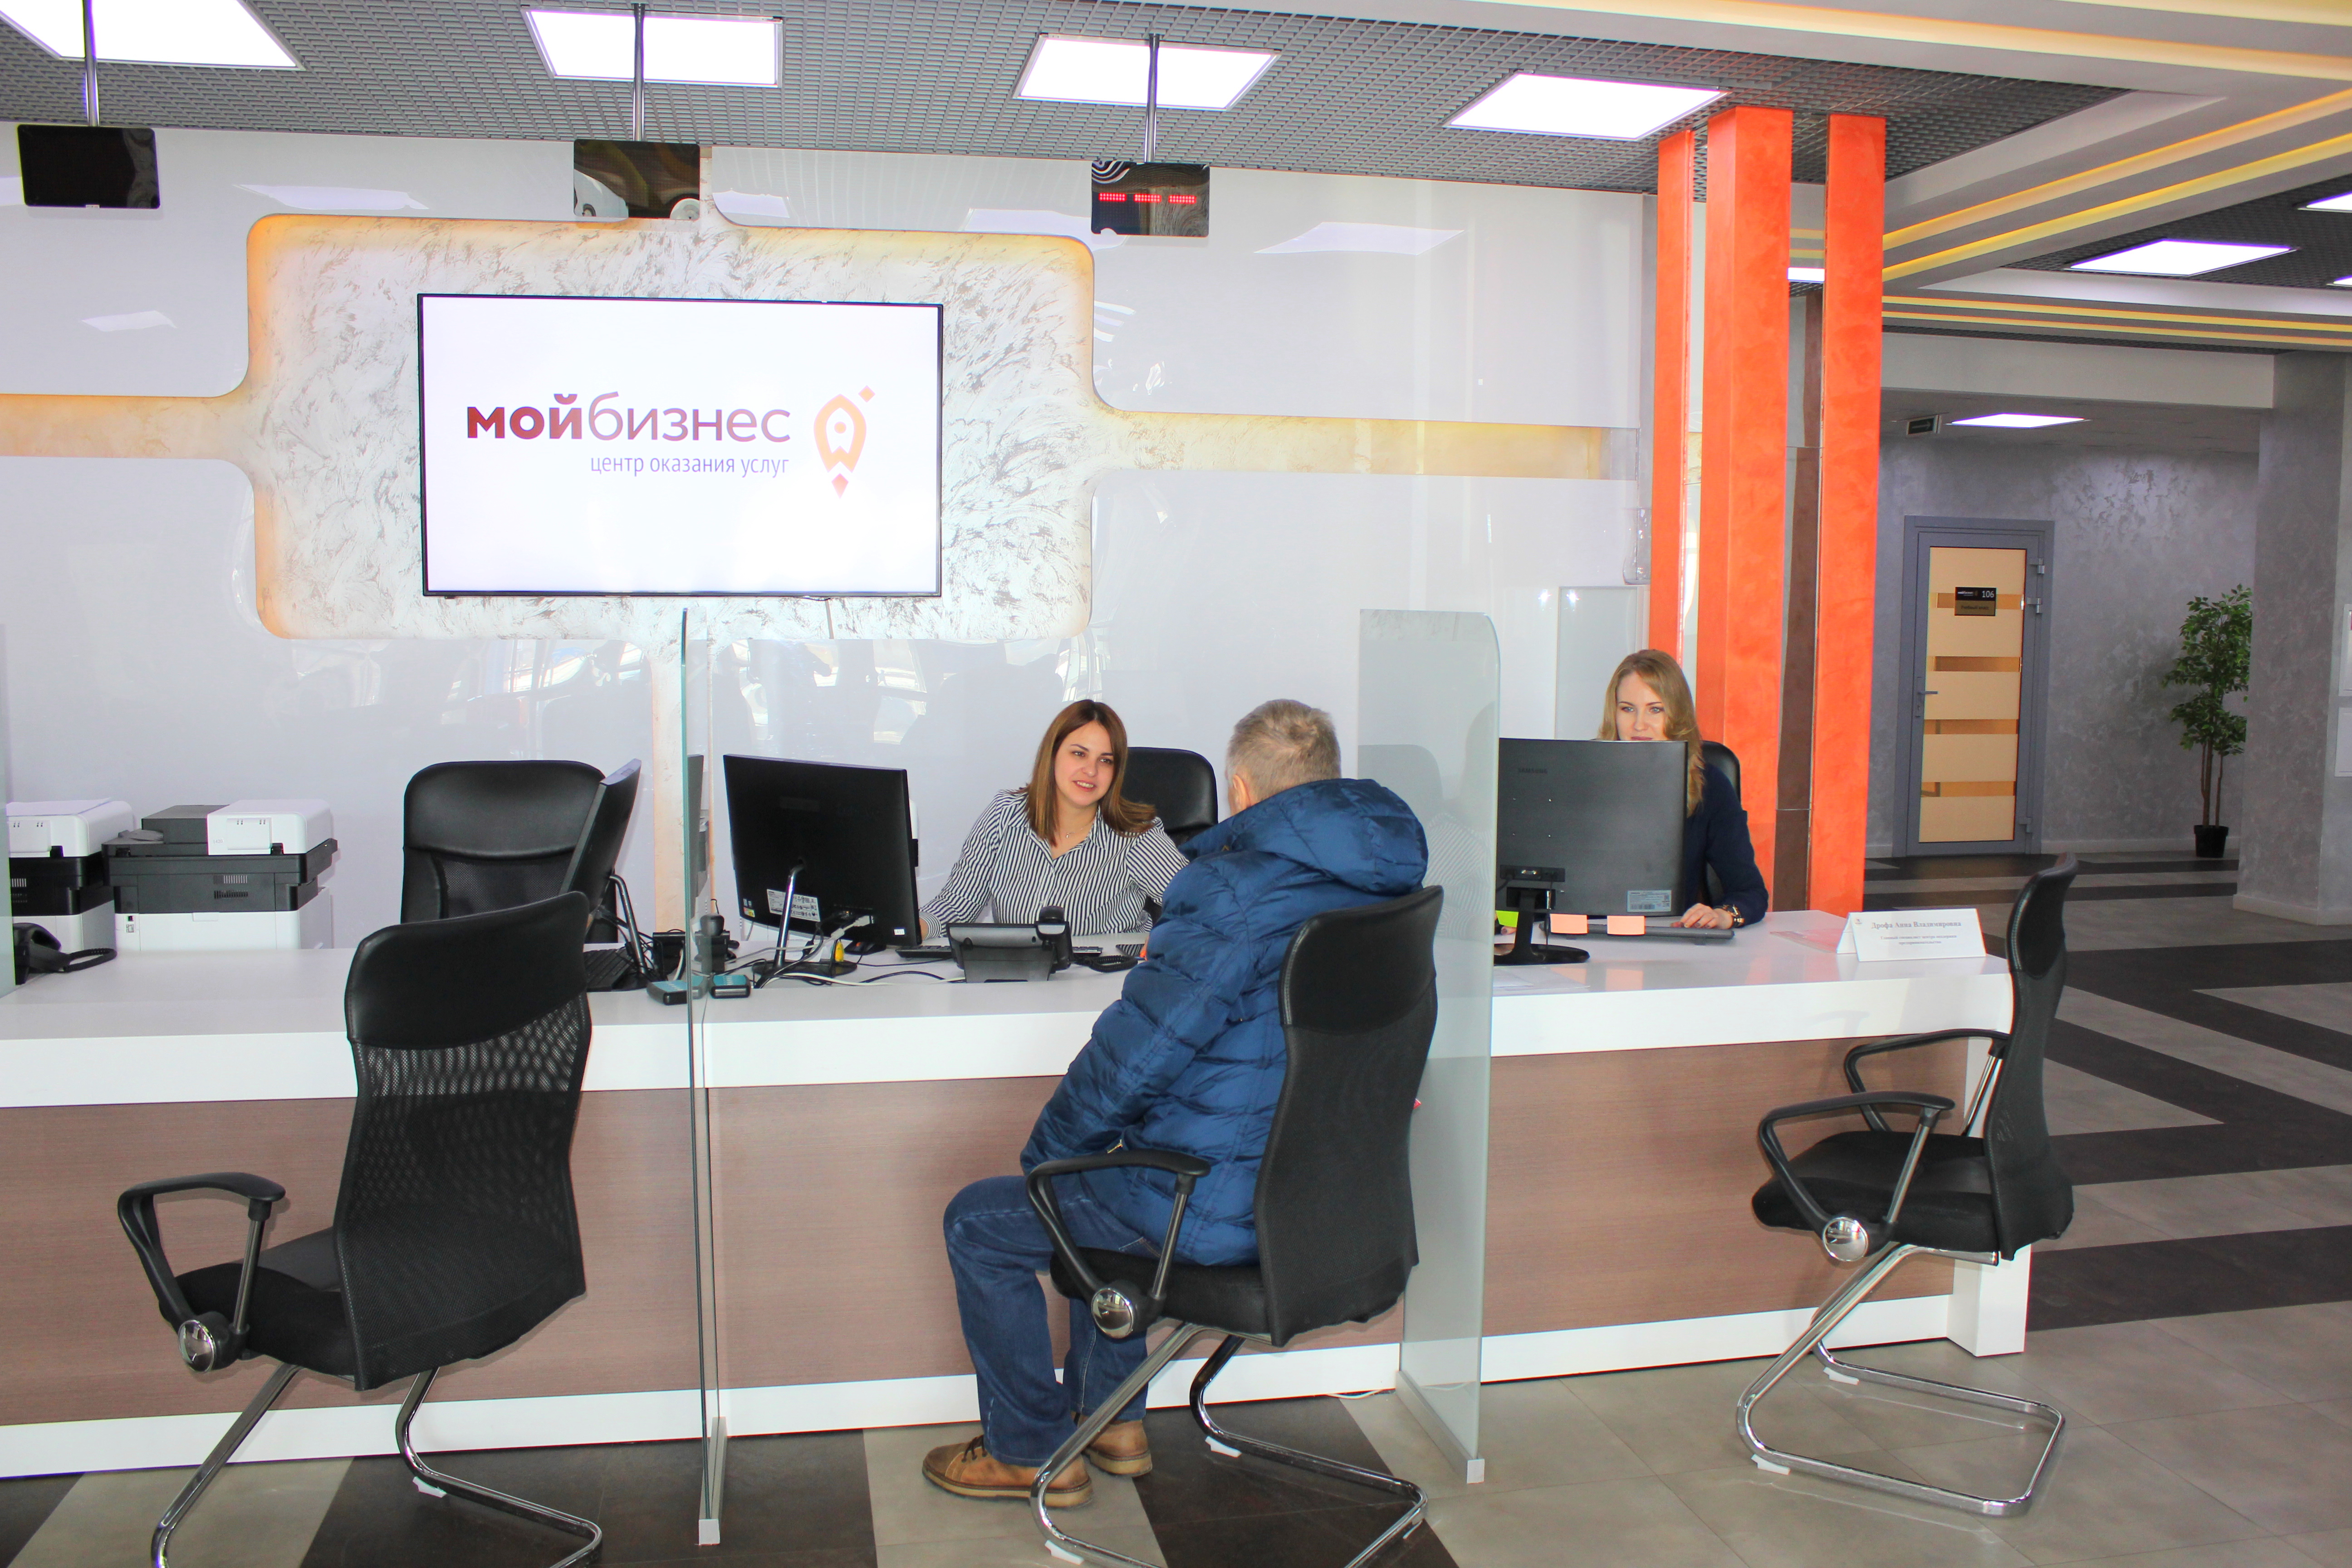 Омский фонд поддержки предпринимательства и центр "Мой бизнес" работают в обычном режиме